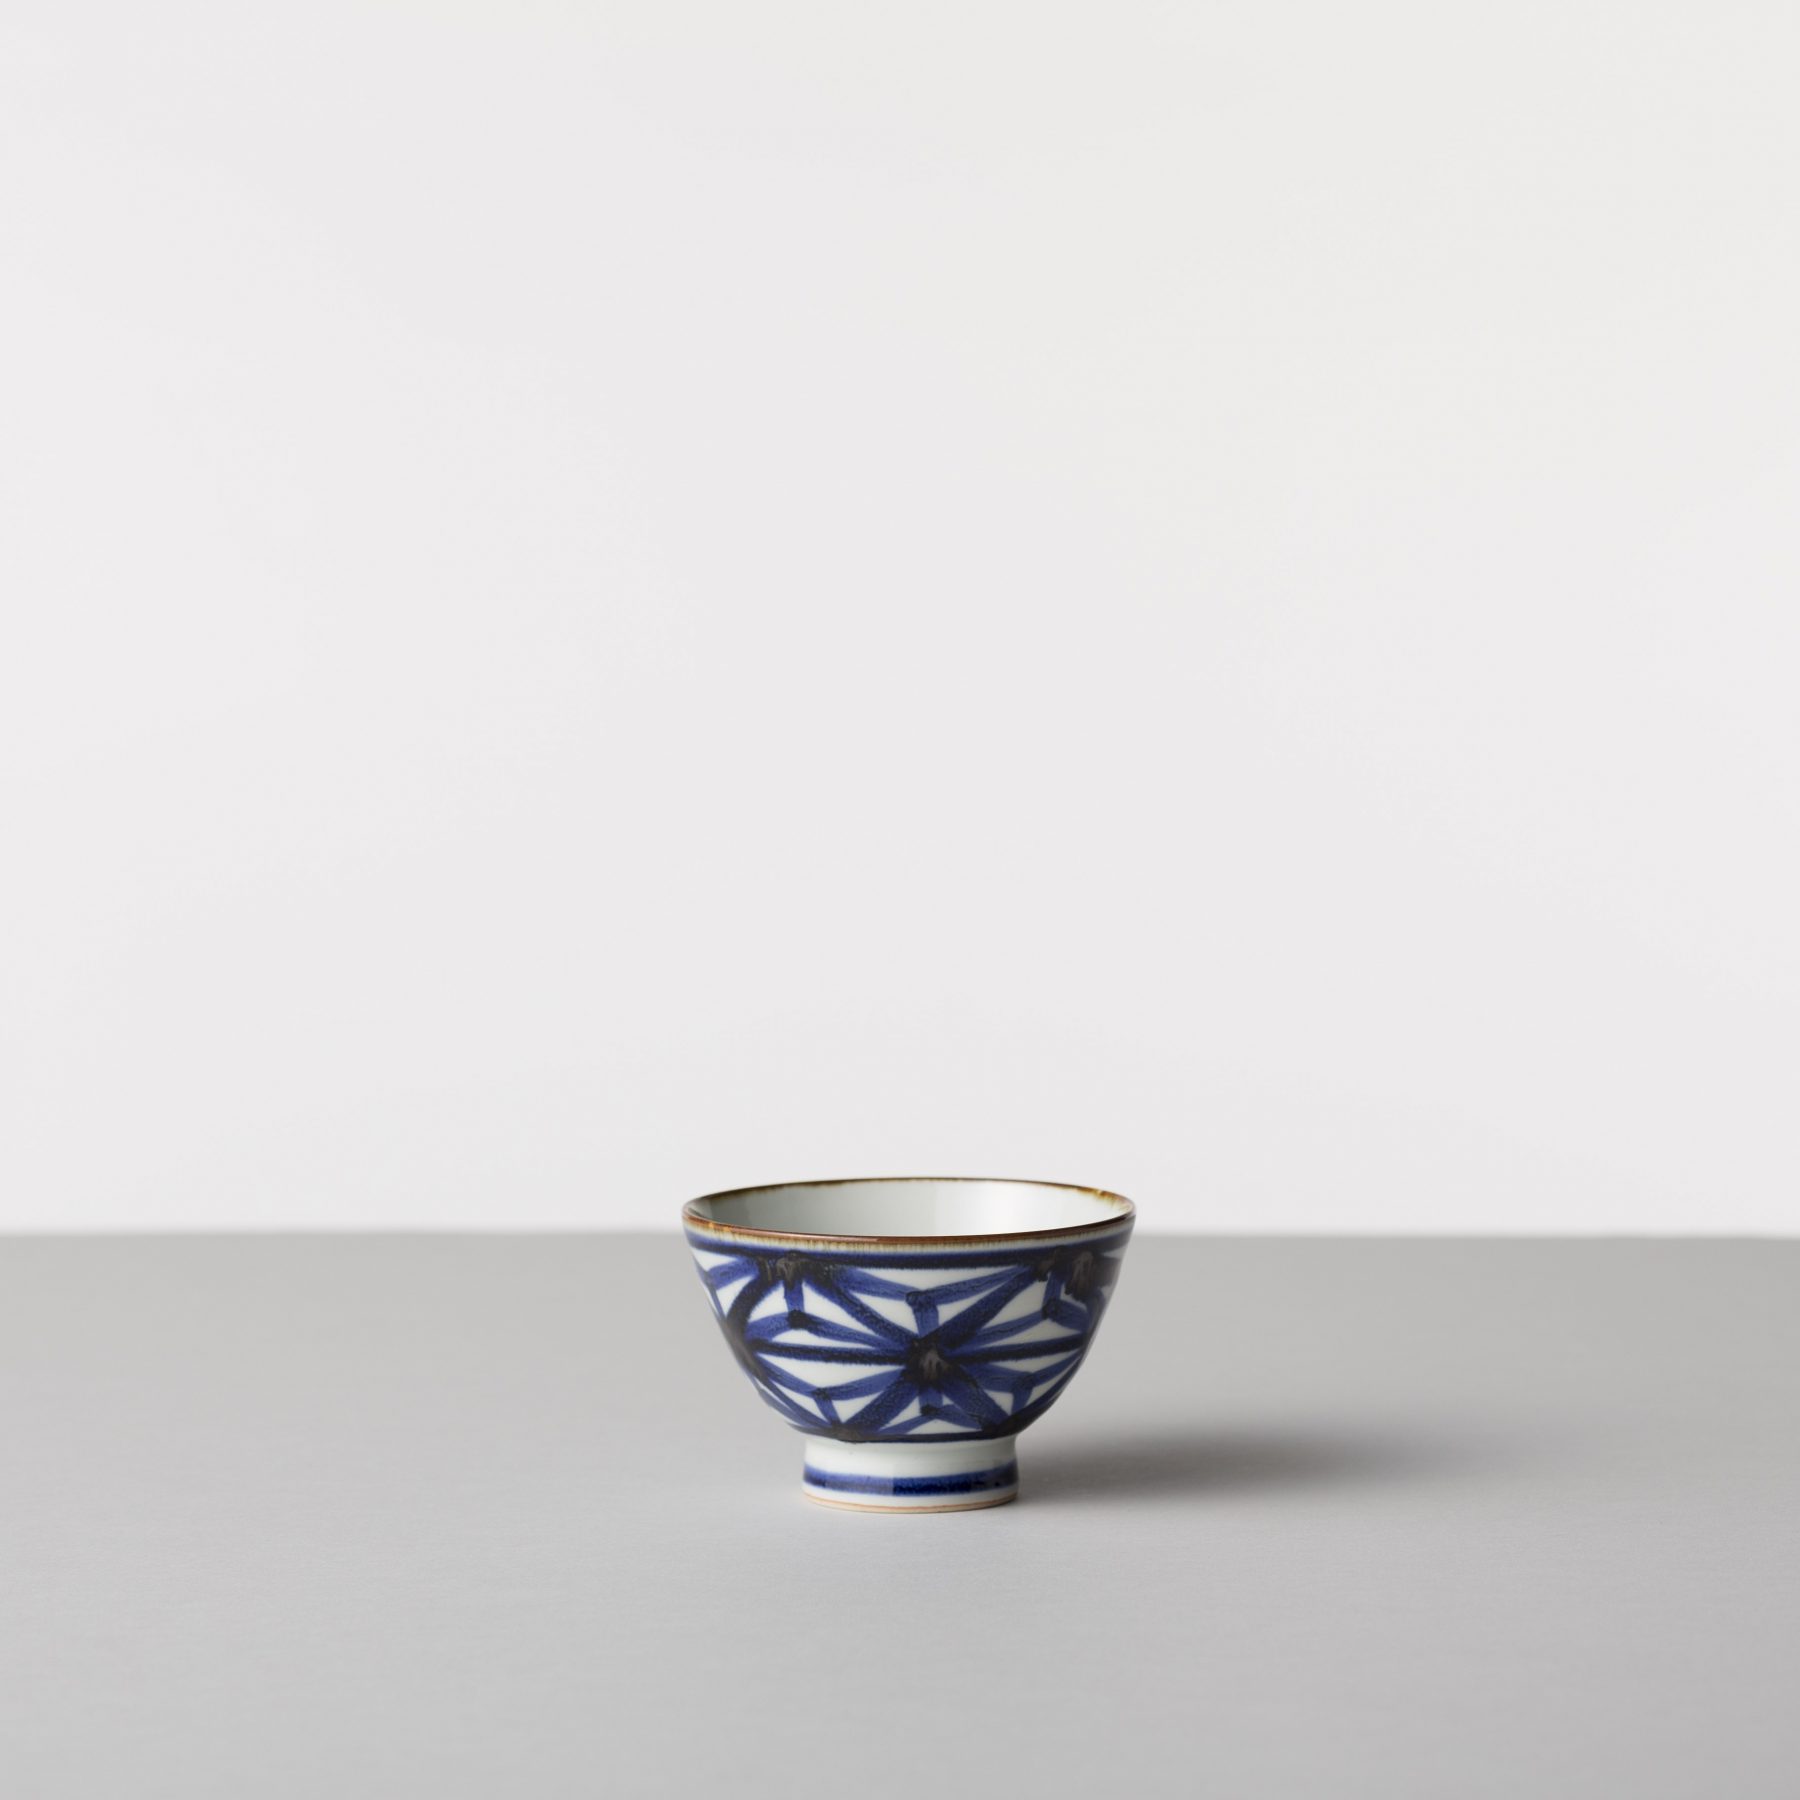 いろは 茶碗 有限会社マルヒロ 波佐見焼の陶磁器ブランド